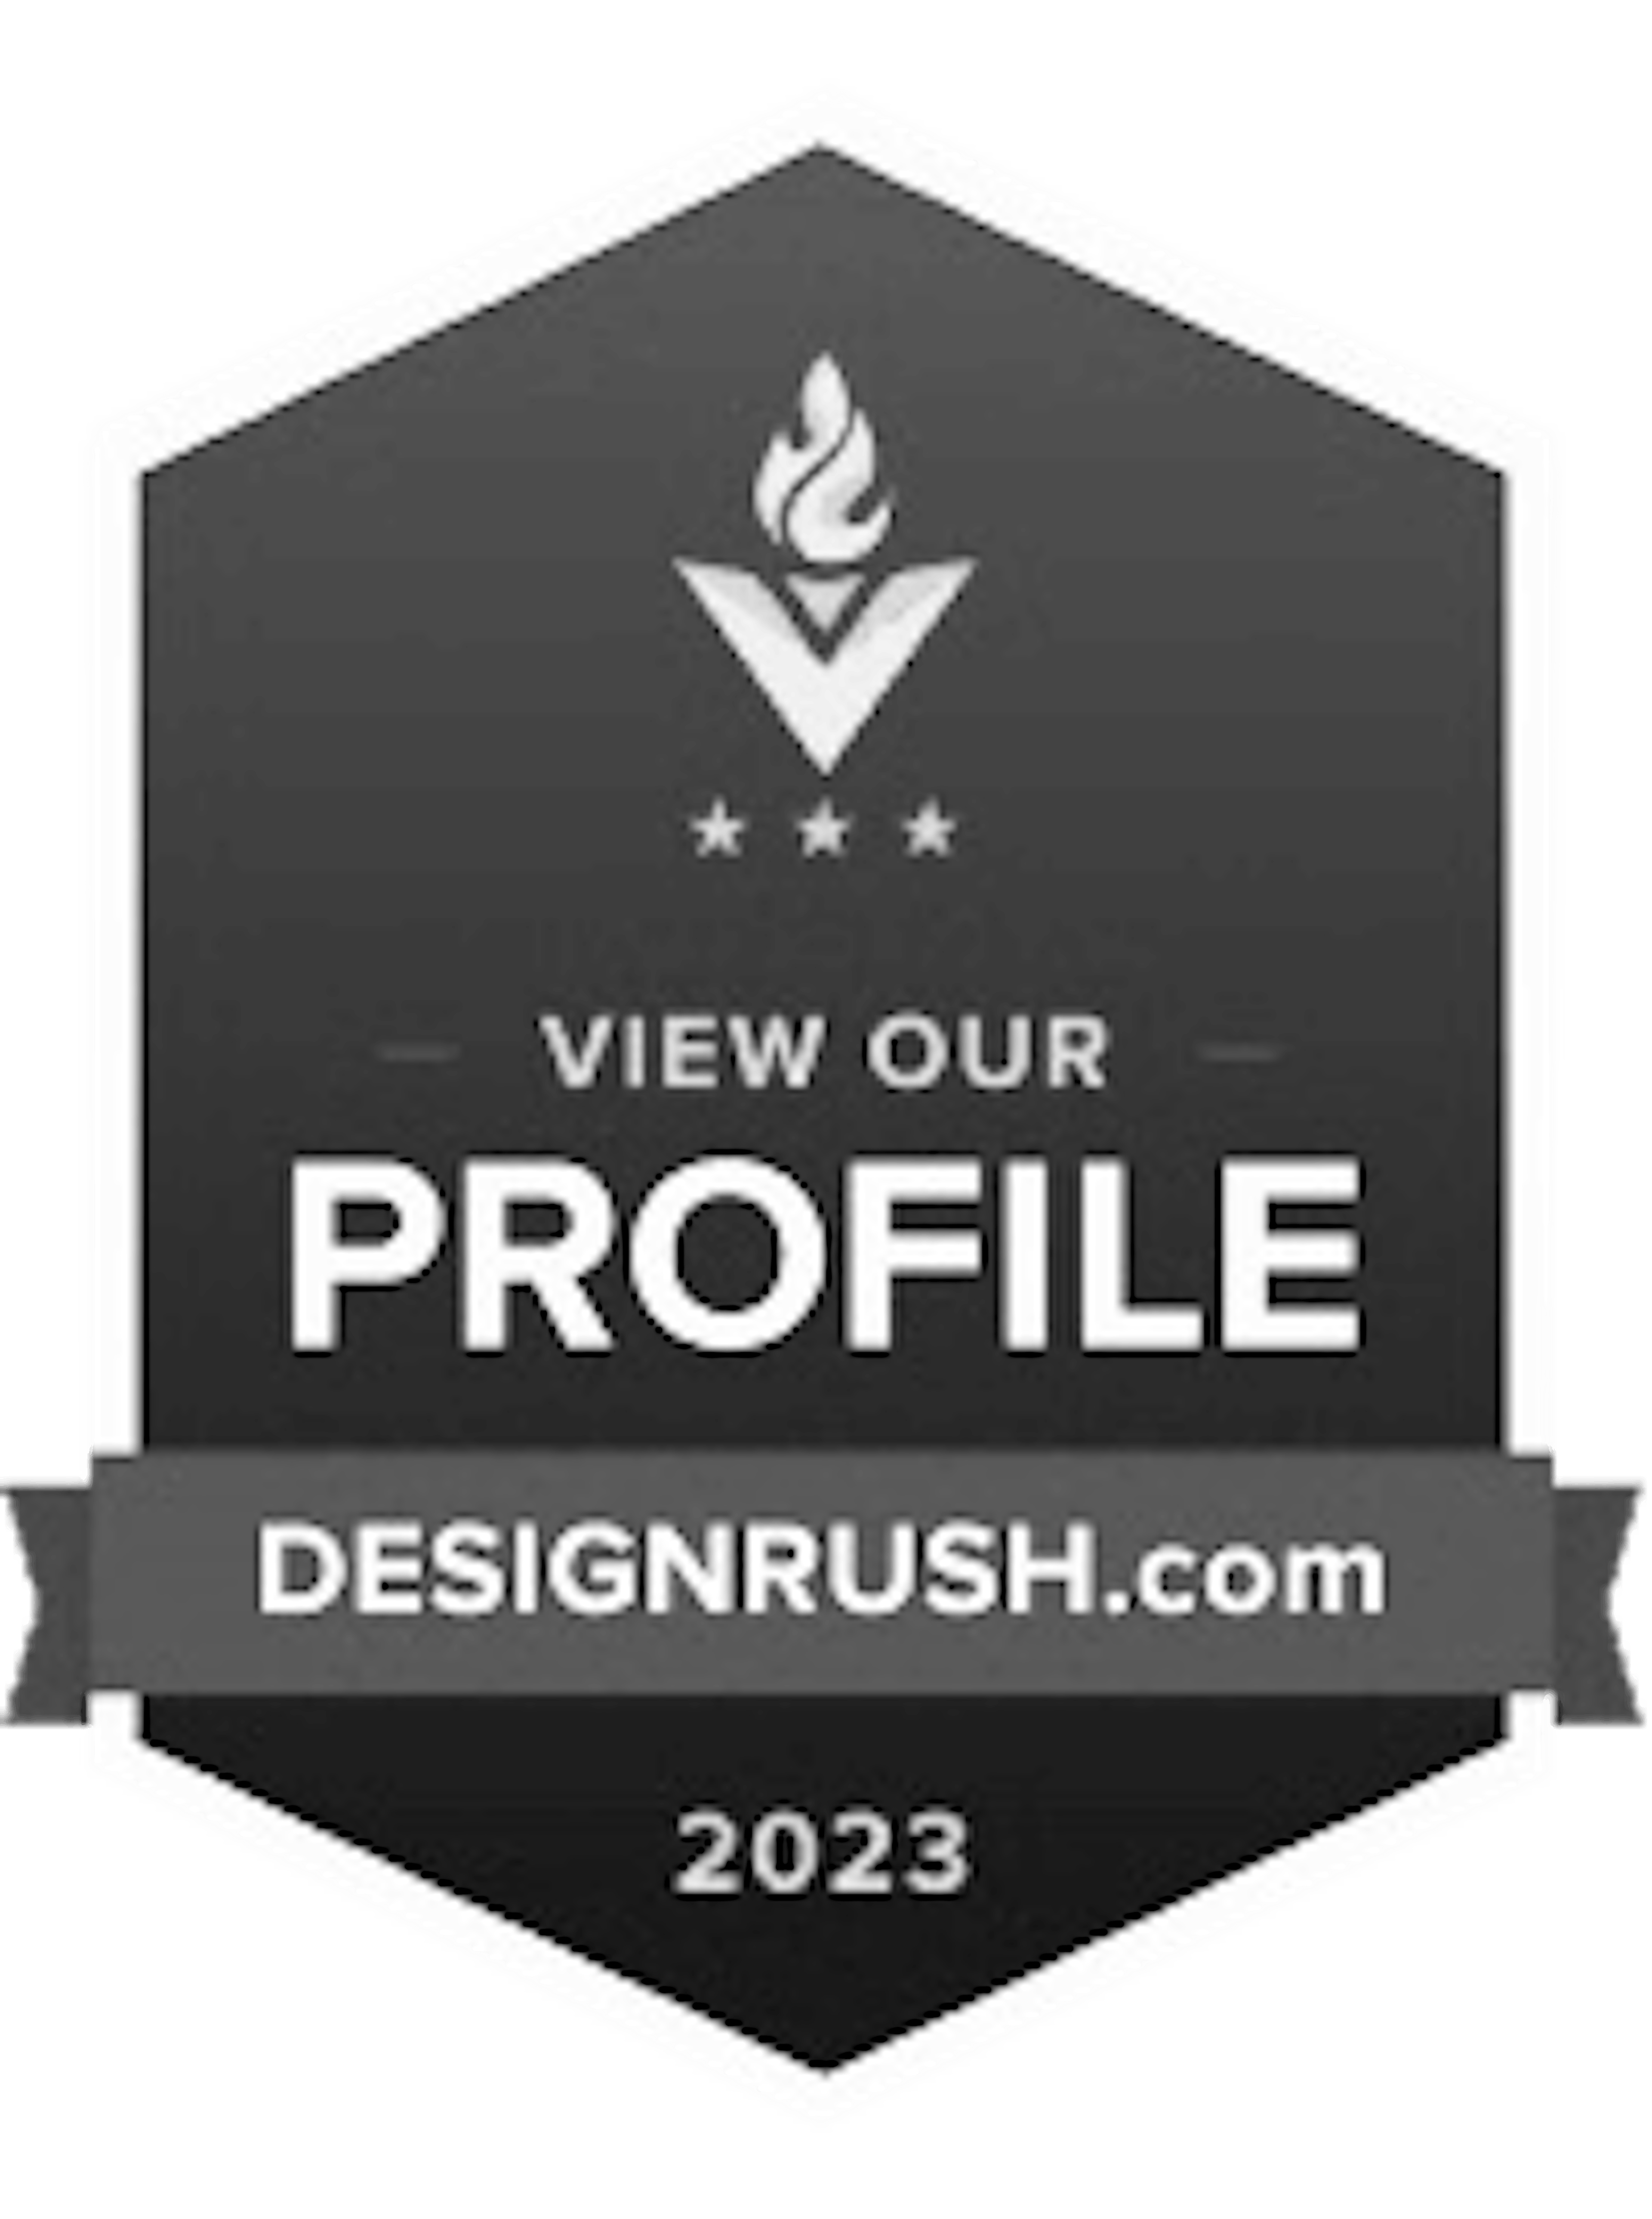 Design Rush - 2023